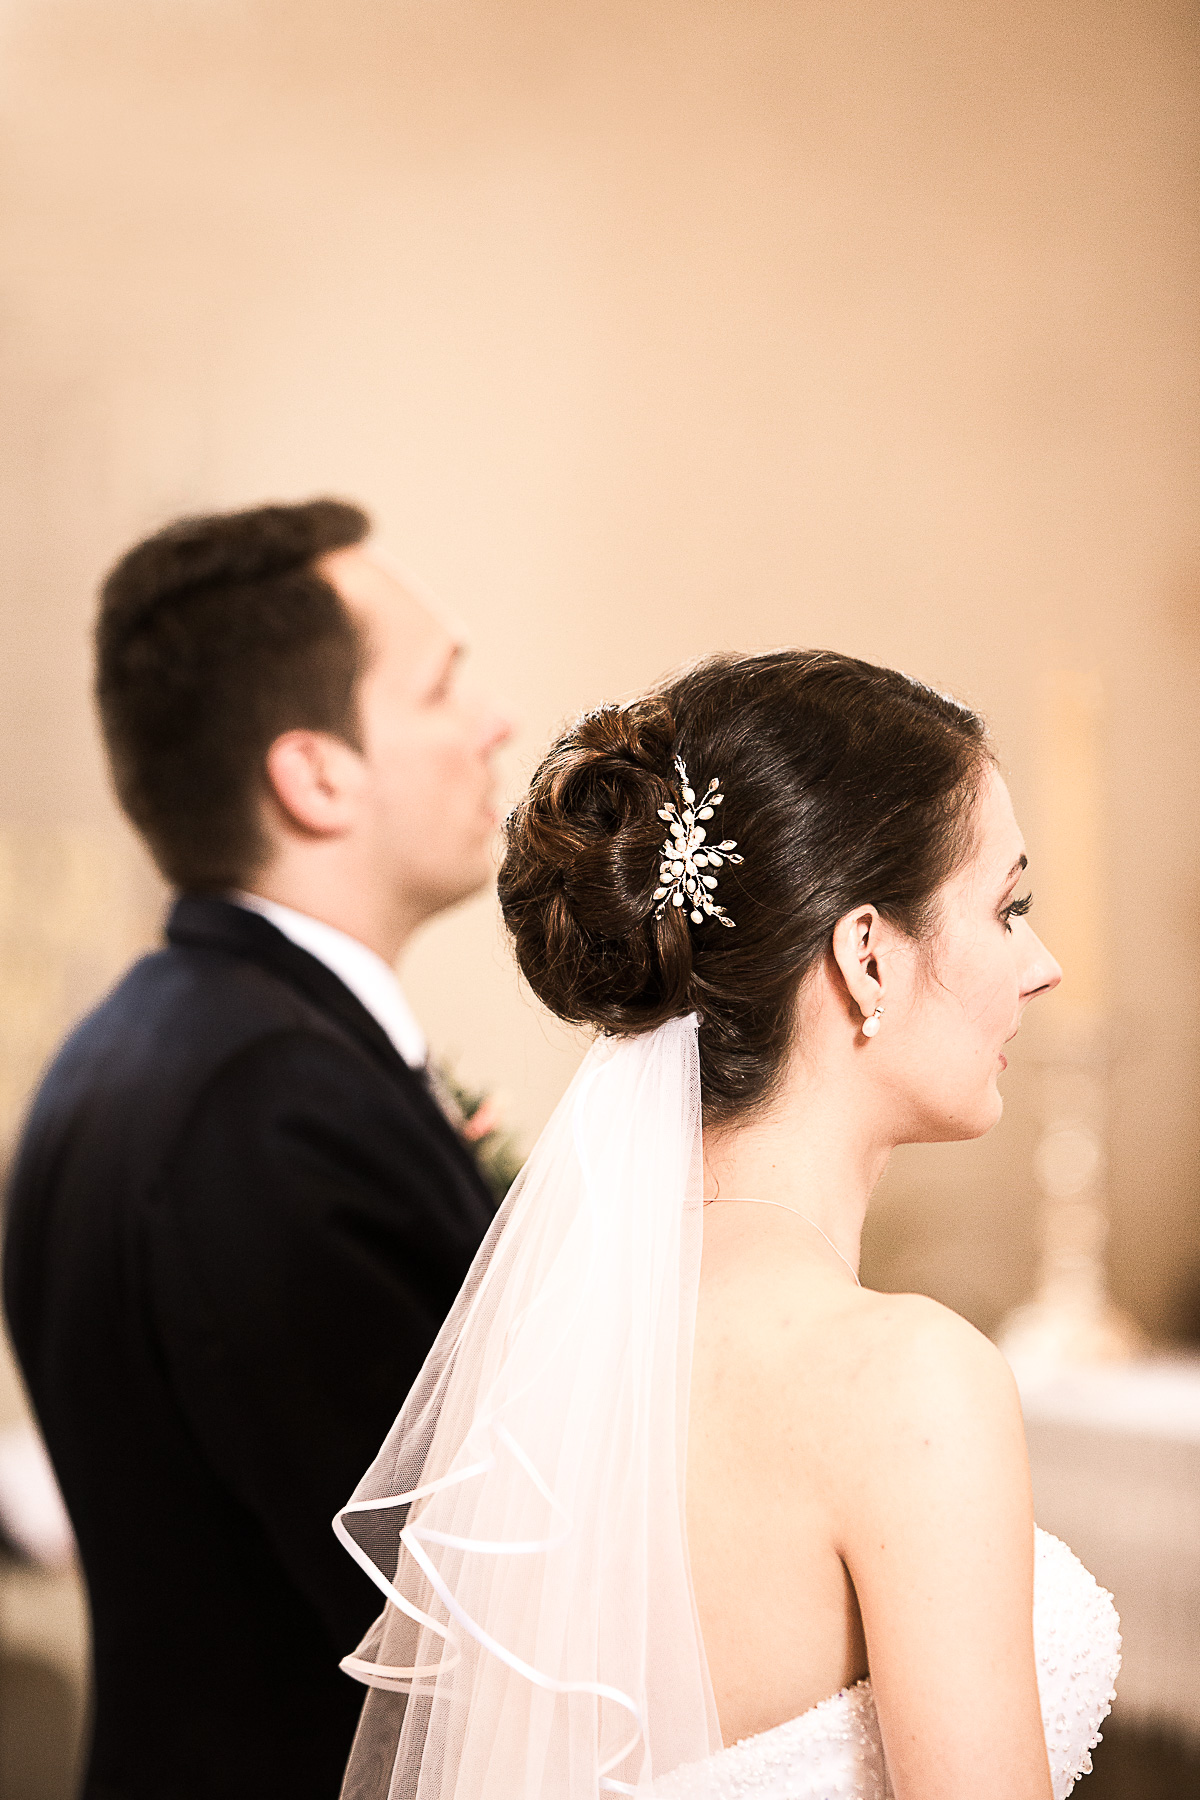 Die seitliche Rückennahansicht von der Braut. Sie hat eine elegante Hochsteckfrisur mit Haarbrosche und offenem Schleier.